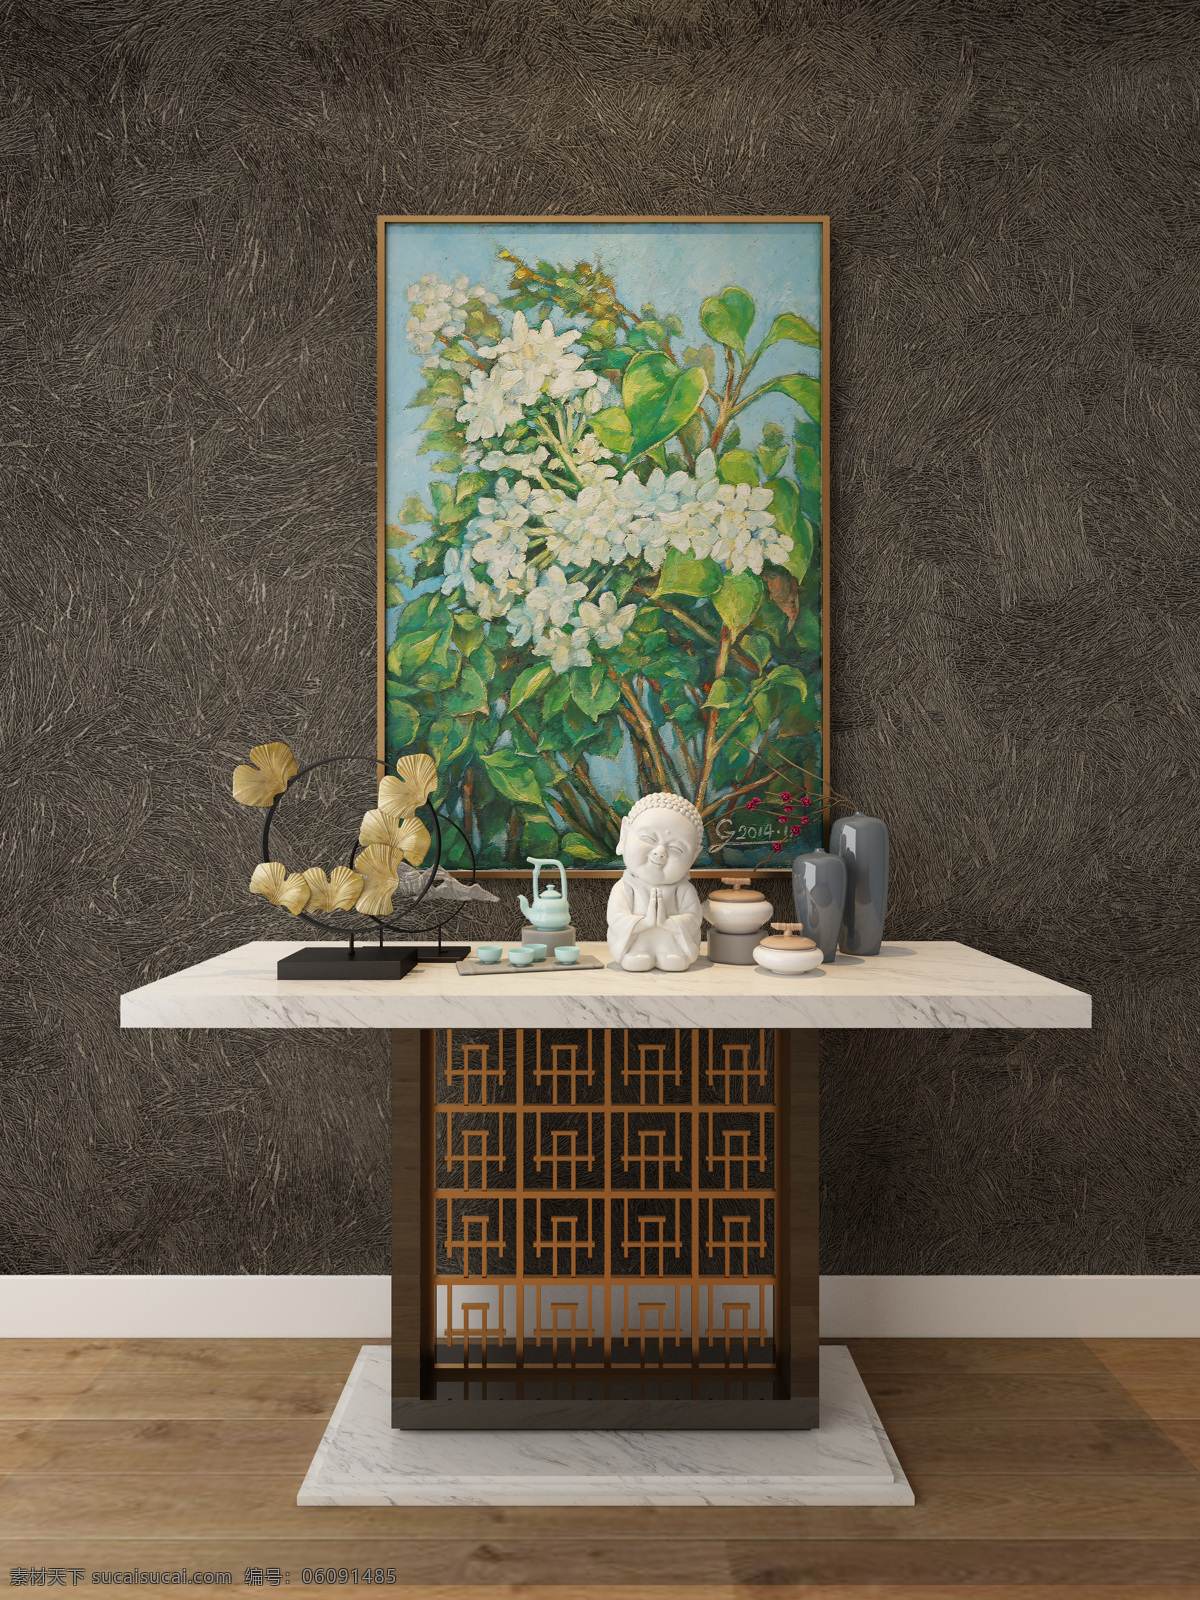 墙纸 油画 挂件 装饰品 展示 空间 墙纸展示 客厅空间 装饰挂件展示 效果图 环境设计 室内设计